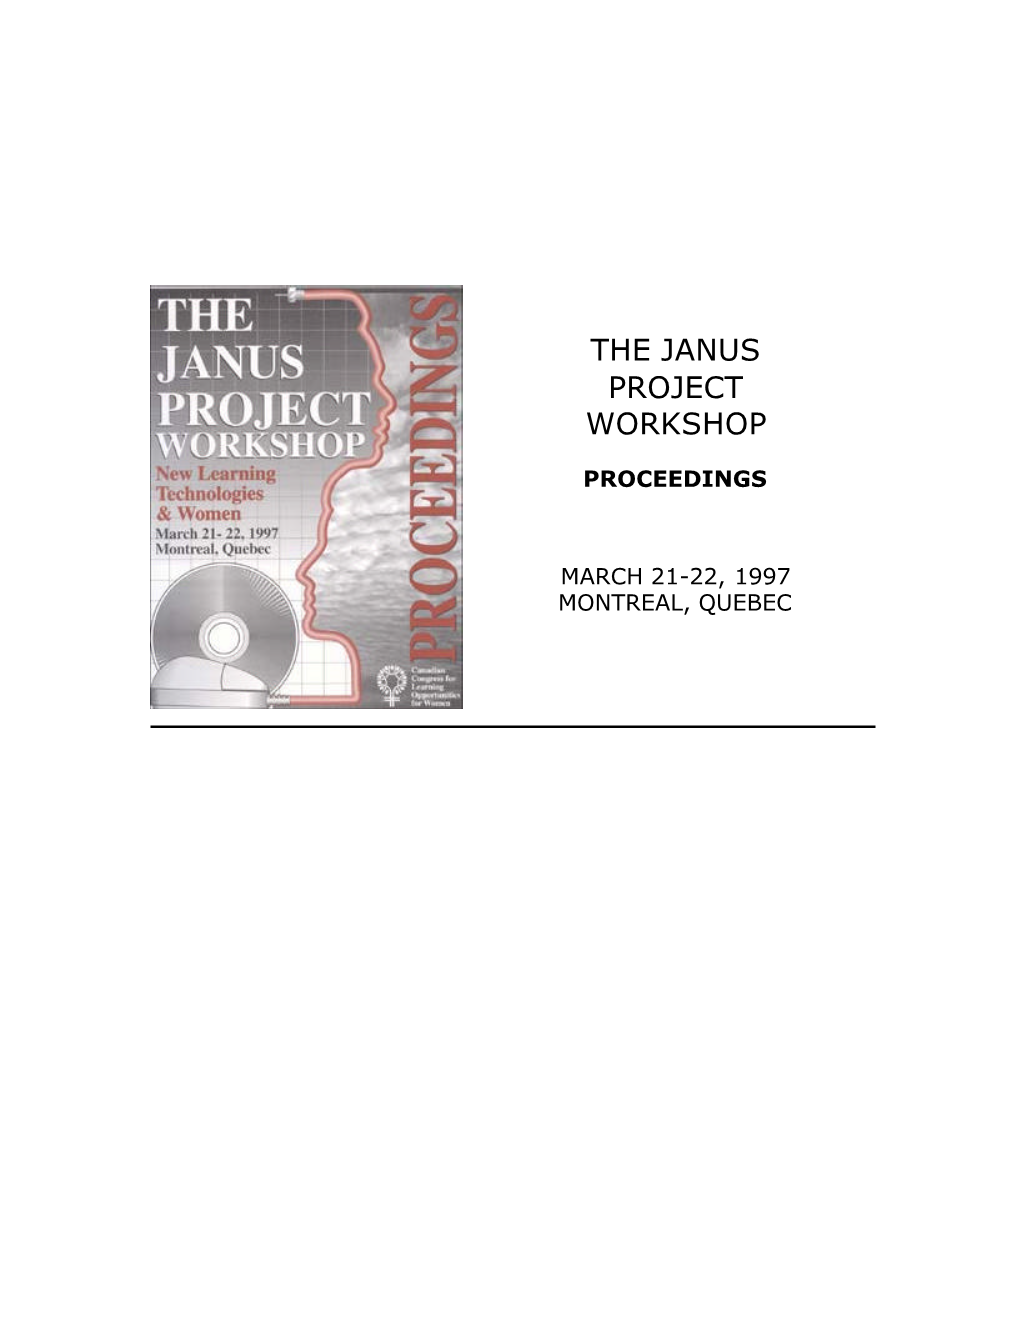 The Janus Project Workshop